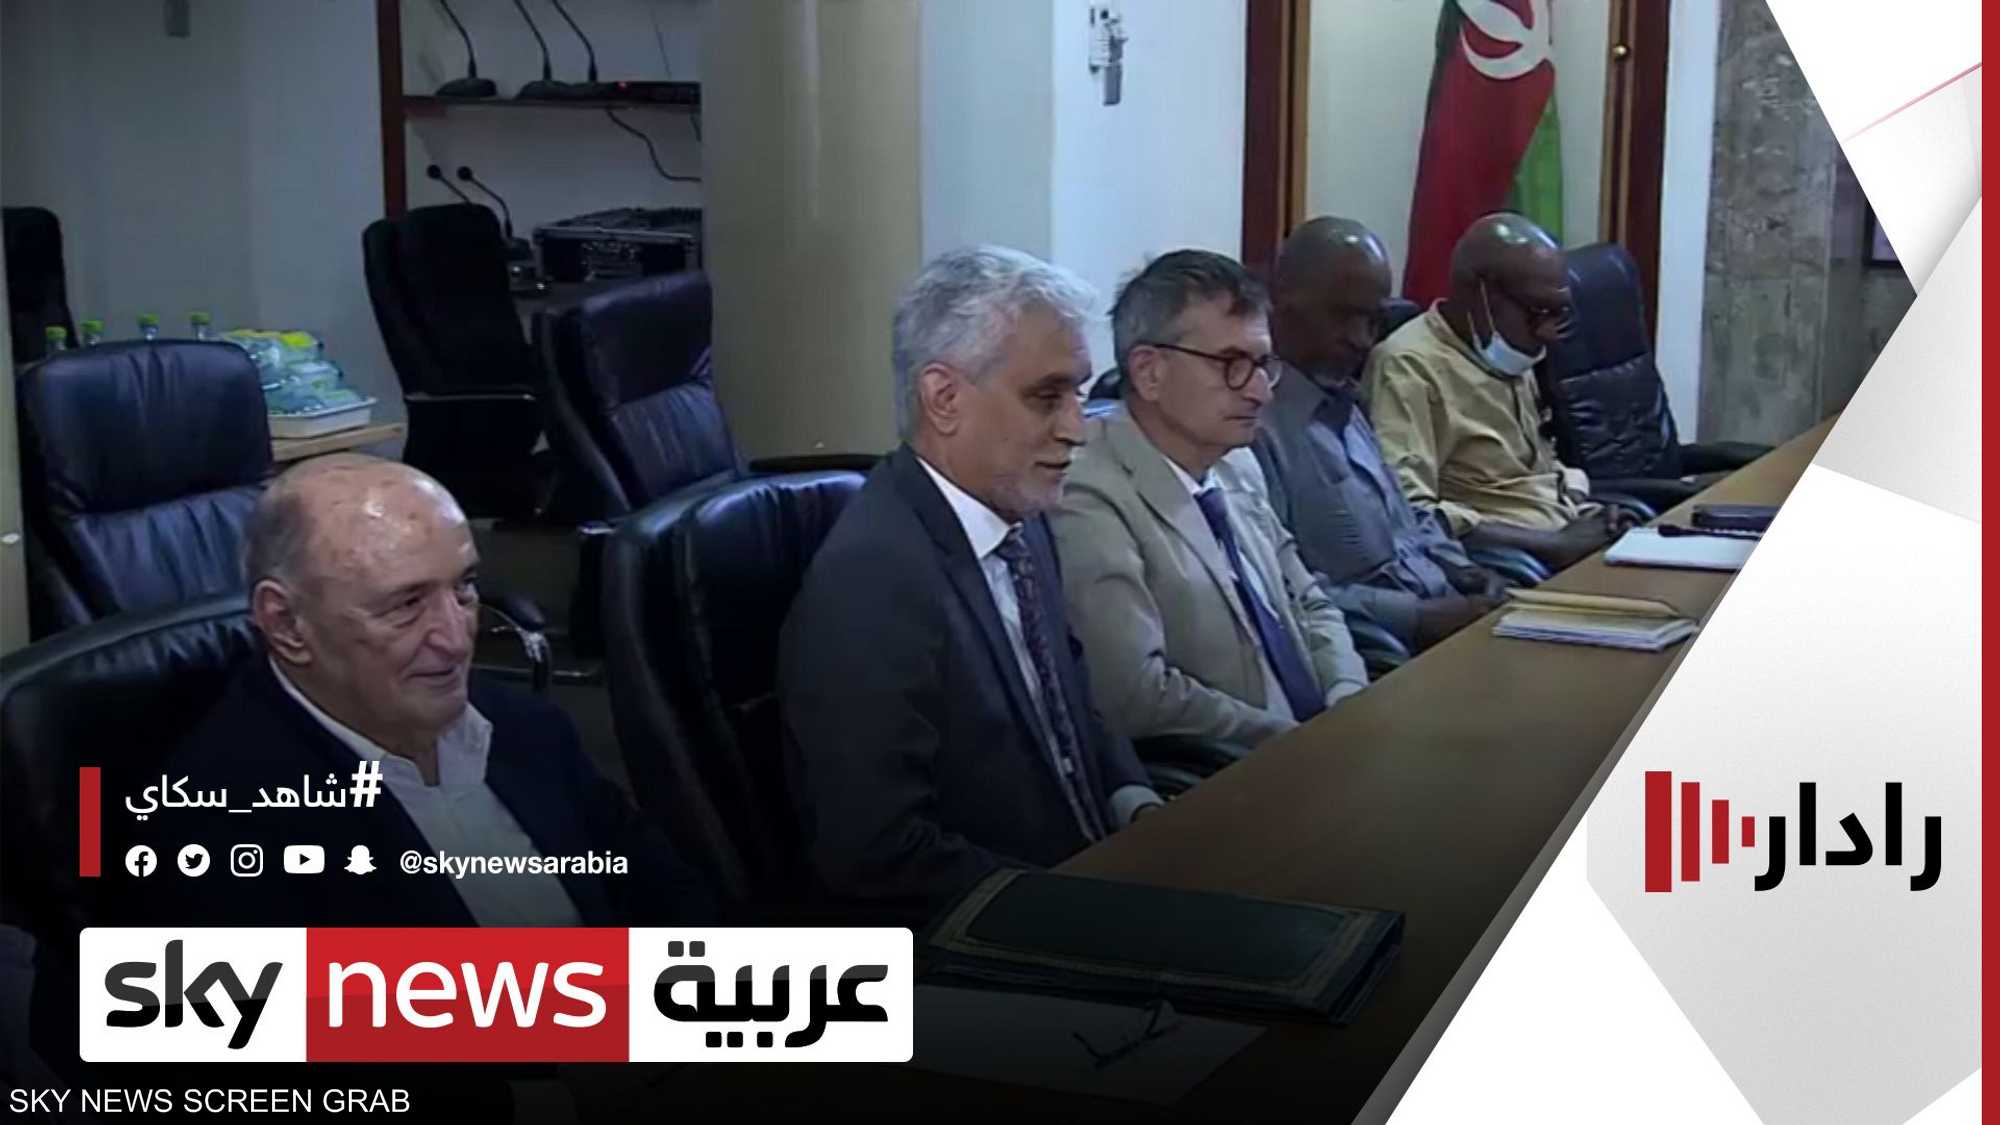 الاتحاد الإفريقي ينفي انسحابه من الآلية الثلاثية في السودان